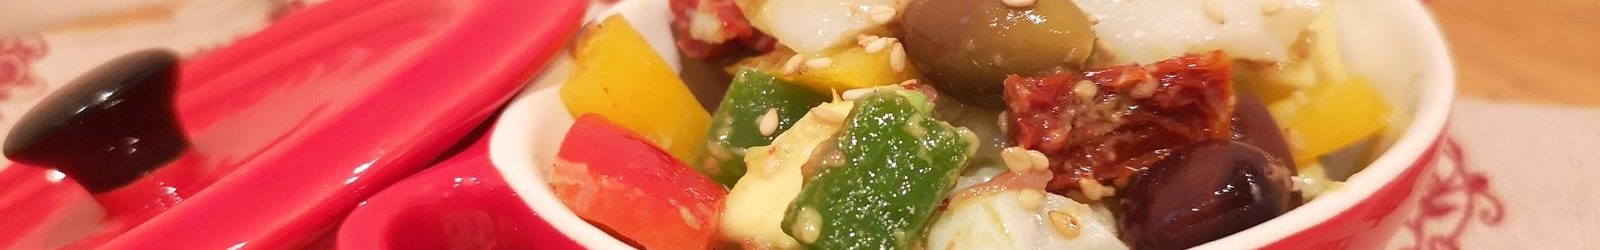 Insalata di baccalà con avocado, olive taggiasche e verdurine la ricetta